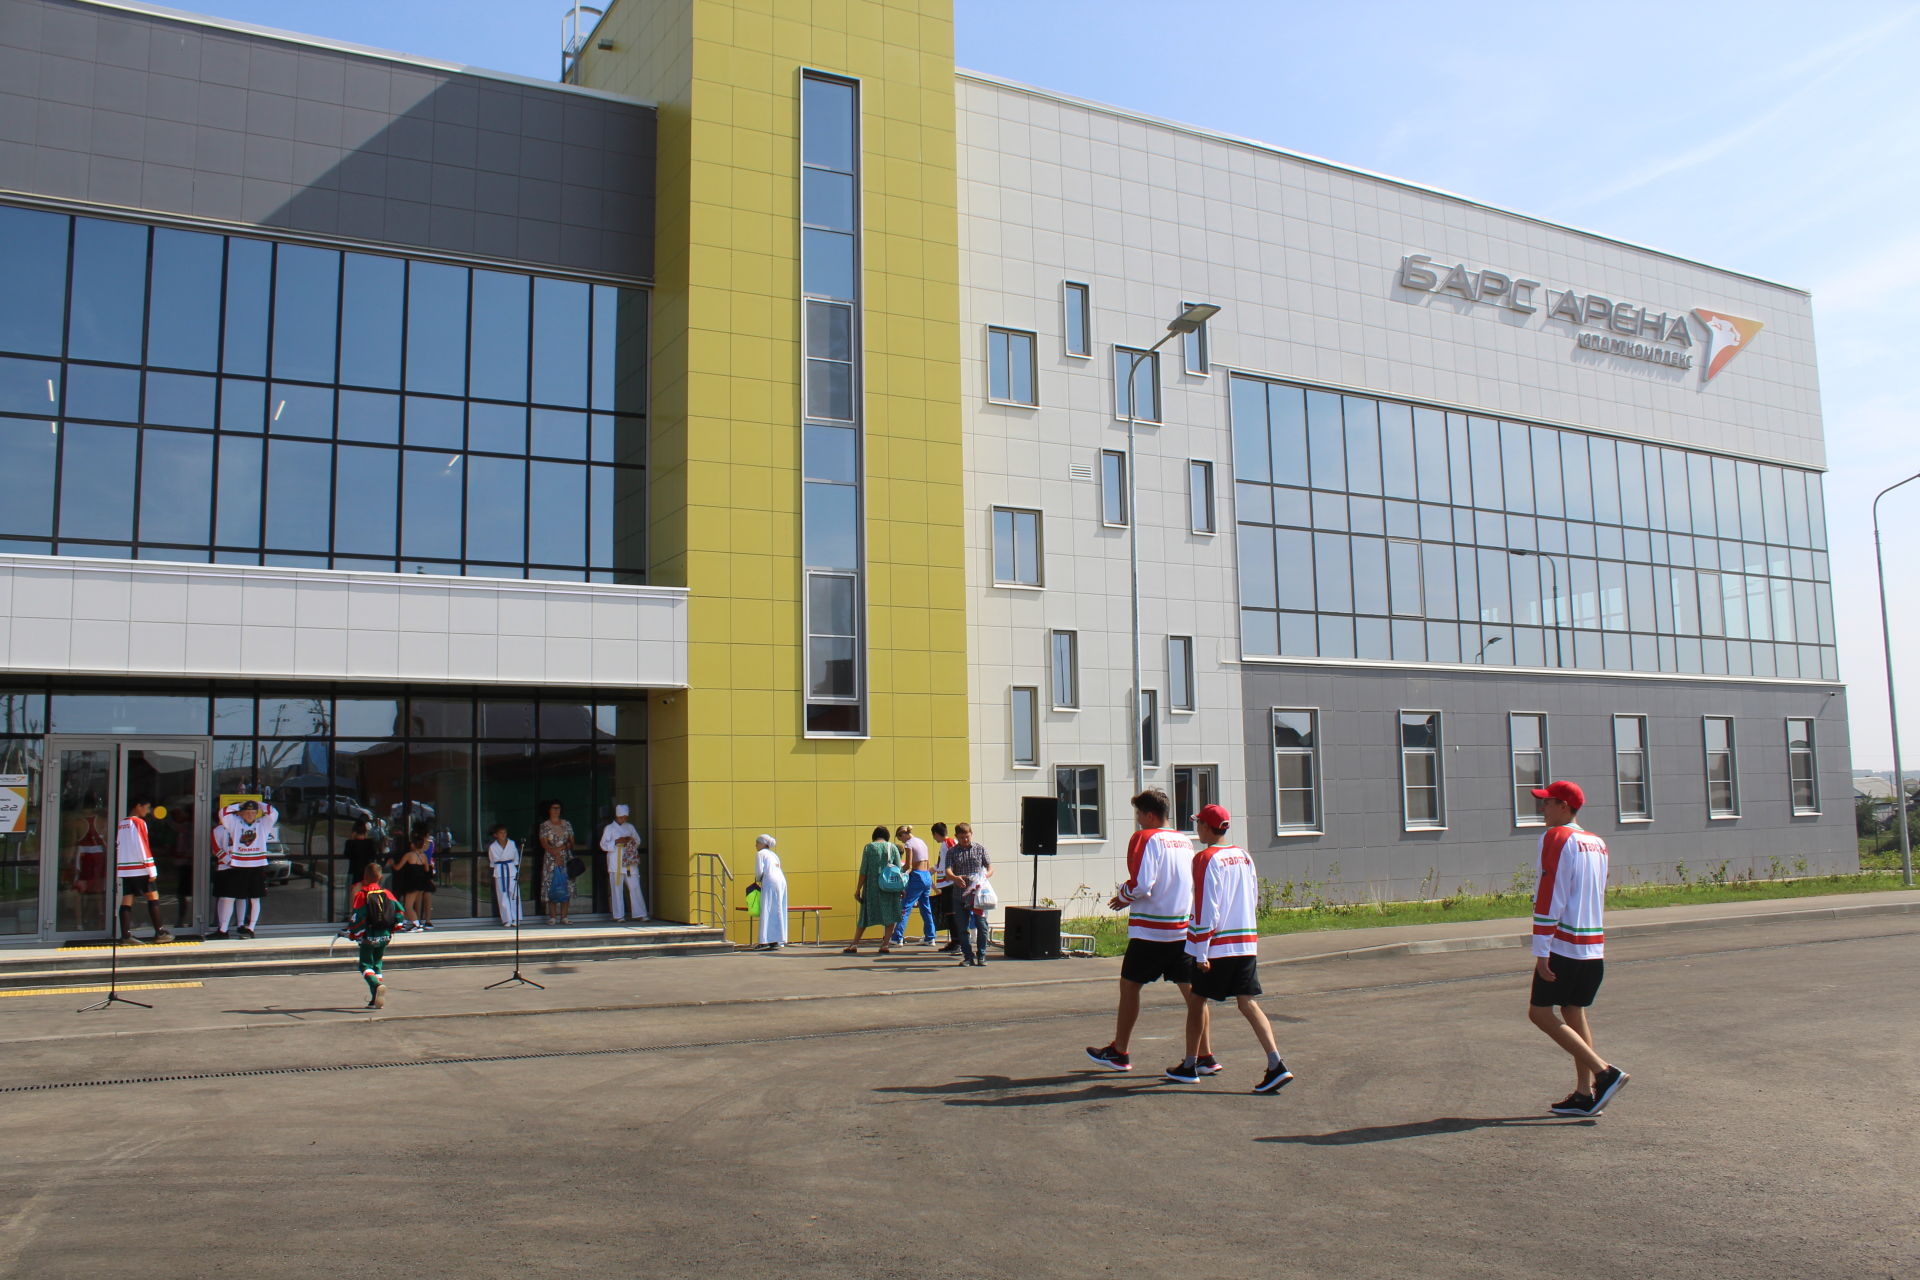 Рустам Минниханов открыл в Кукморе спортивный зал «Барс-Арена»